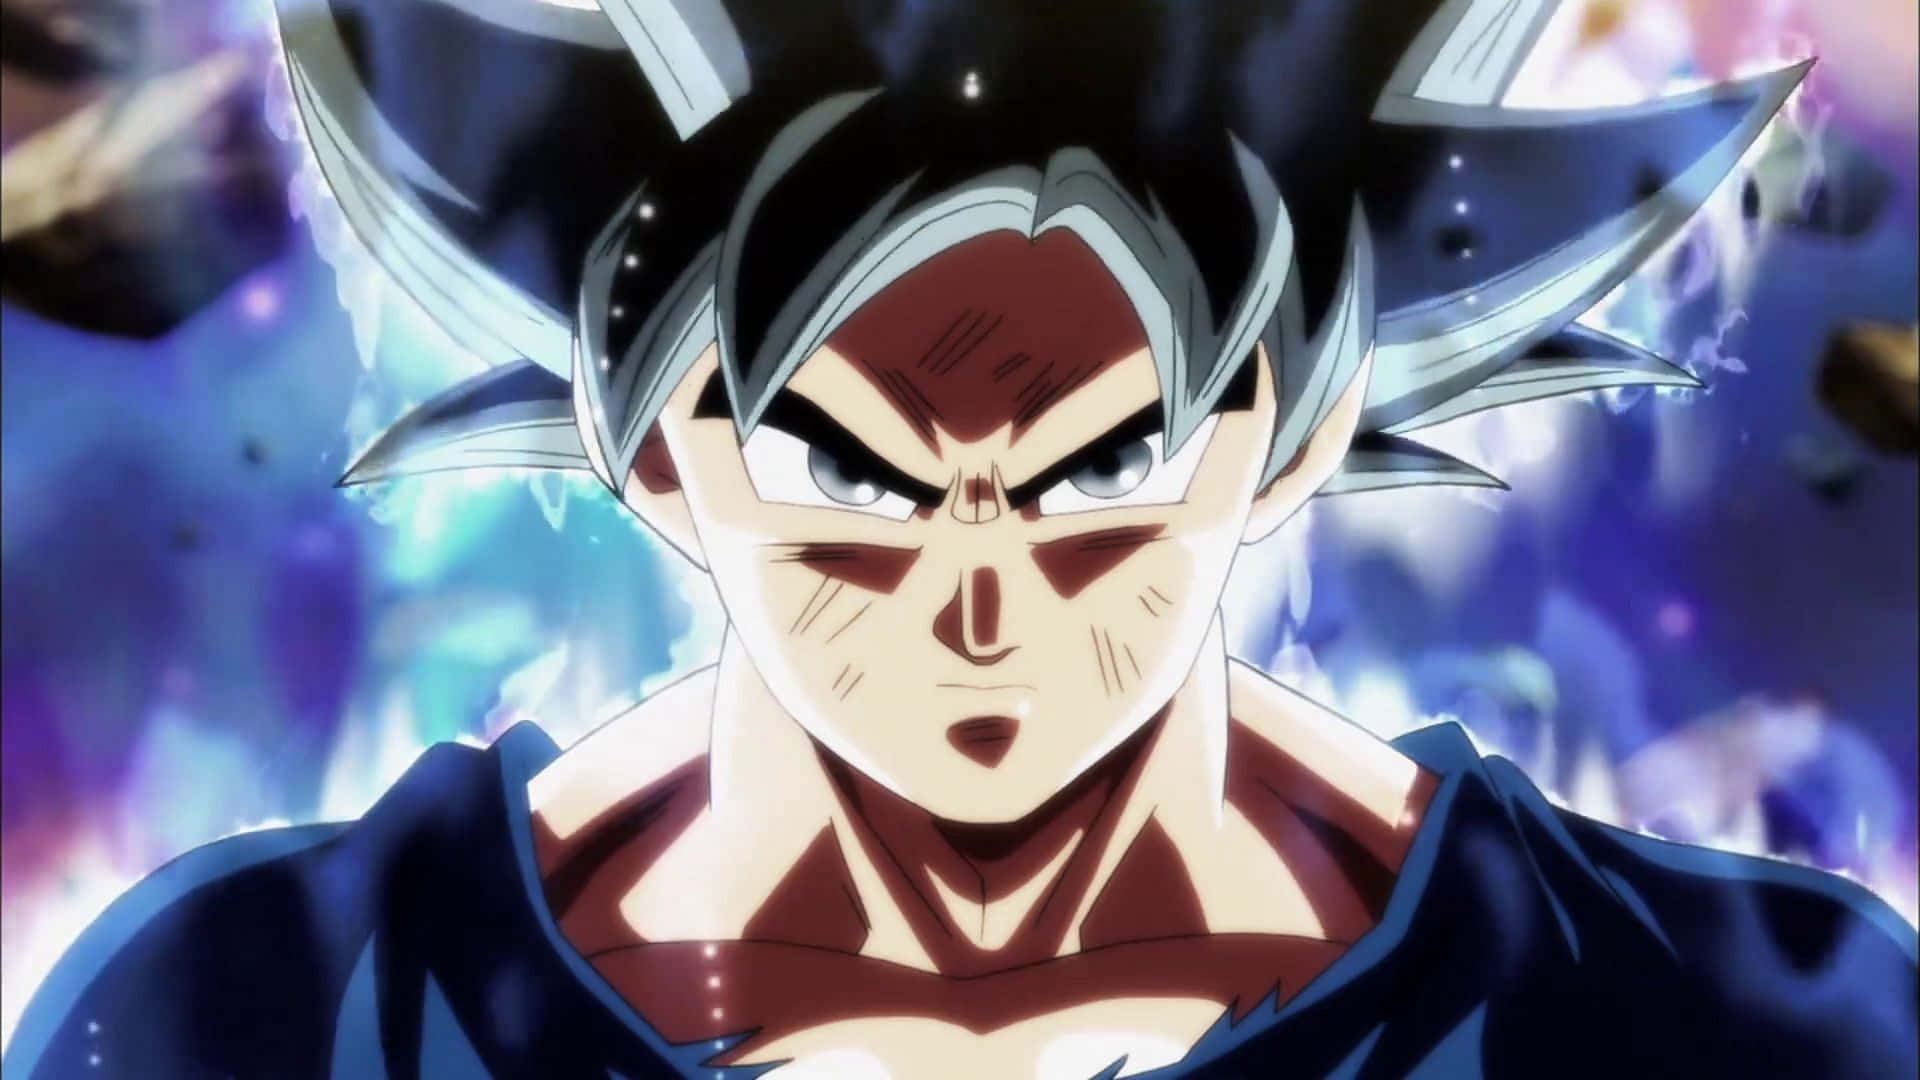 Dieaugen Von Goku Aus Dragon Ball Super Werden Silber, Wenn Er Die Kraft Des Ultra Instinkts Freischaltet.